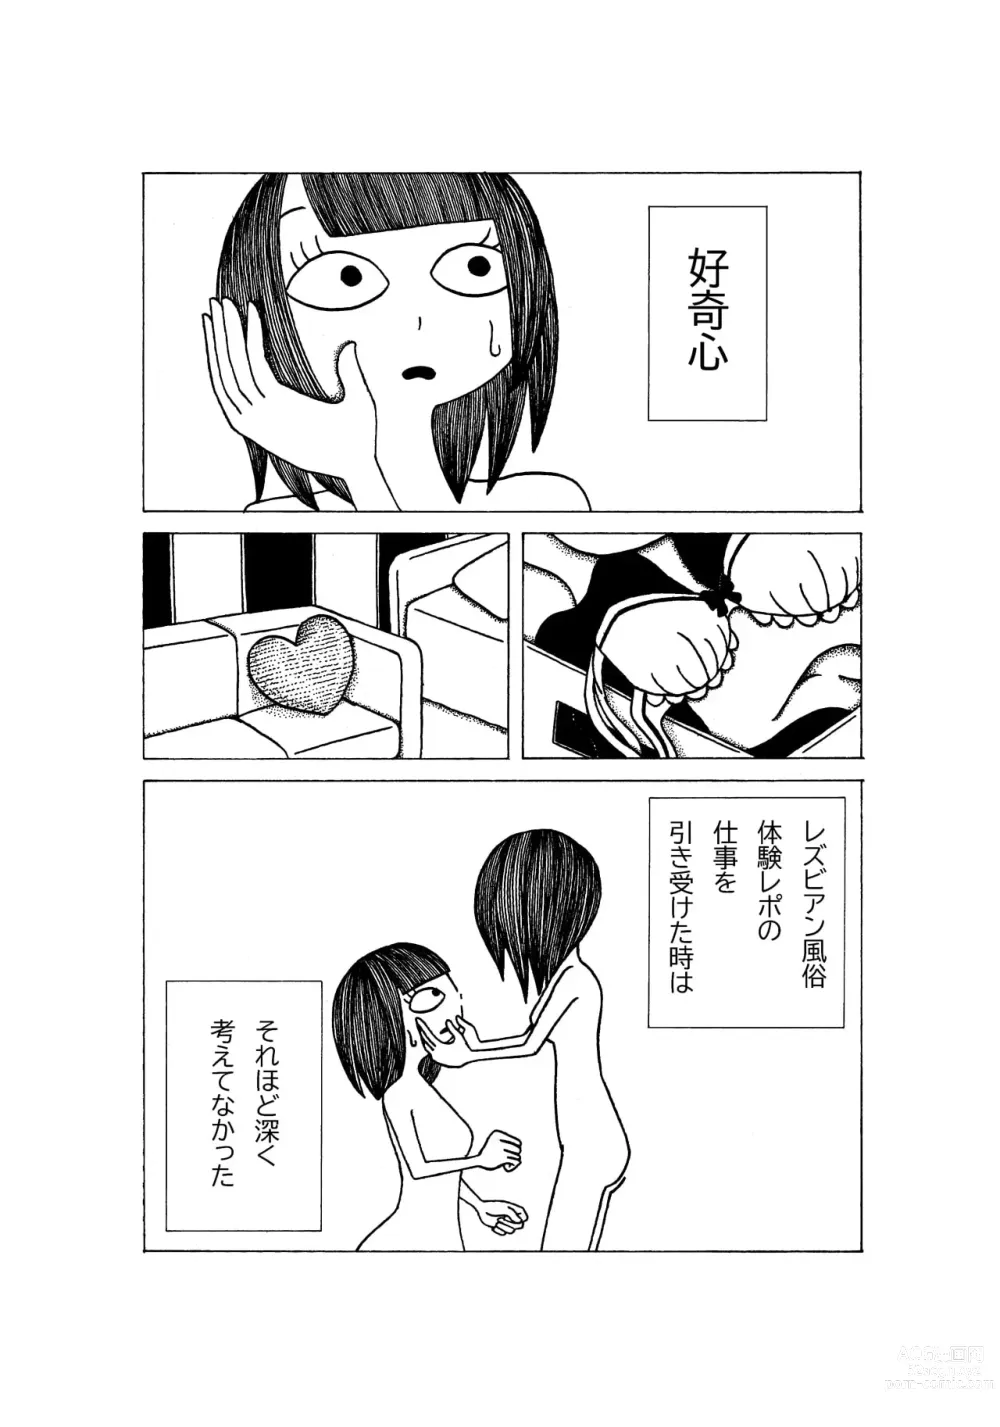 Page 1 of doujinshi Tokubetsuna Tanjoubi no Dekigoto.